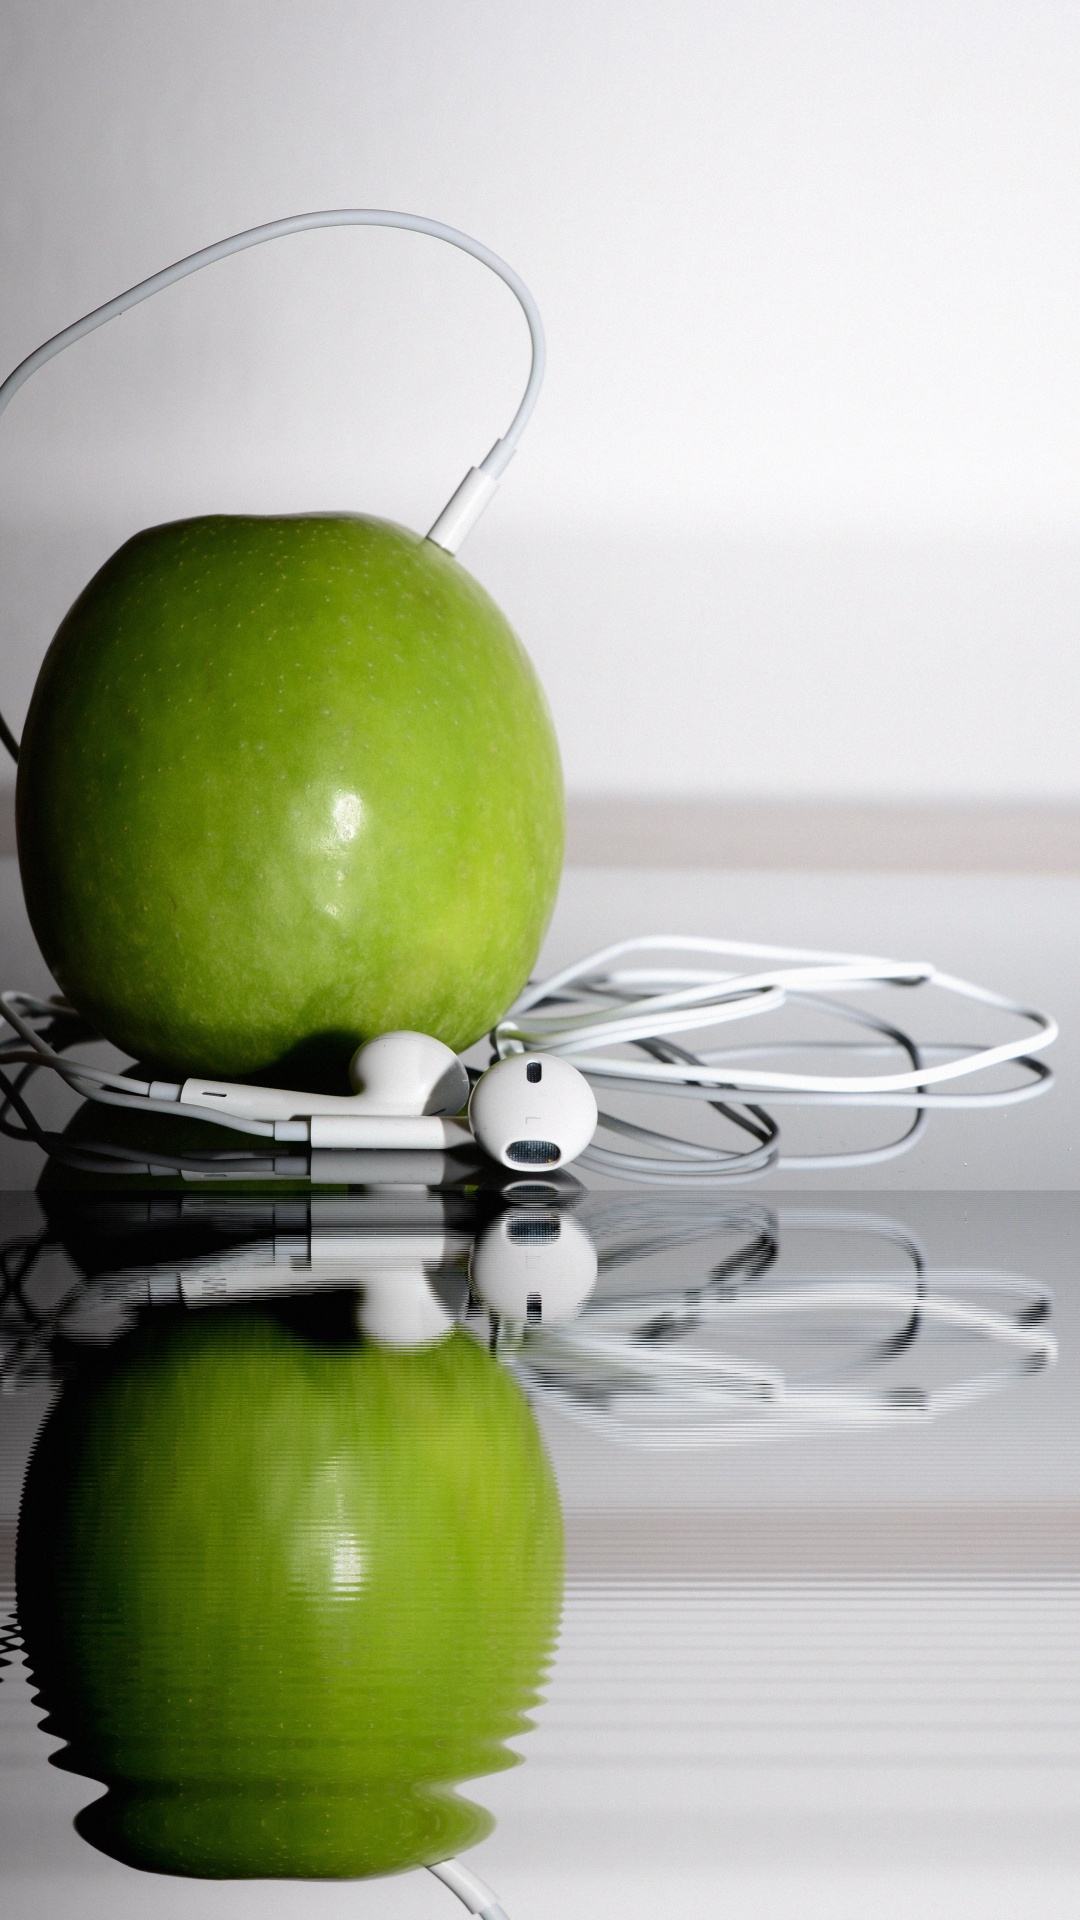 苹果的耳机, 绿色的, 奶奶史密斯, Apple, 食品 壁纸 1080x1920 允许